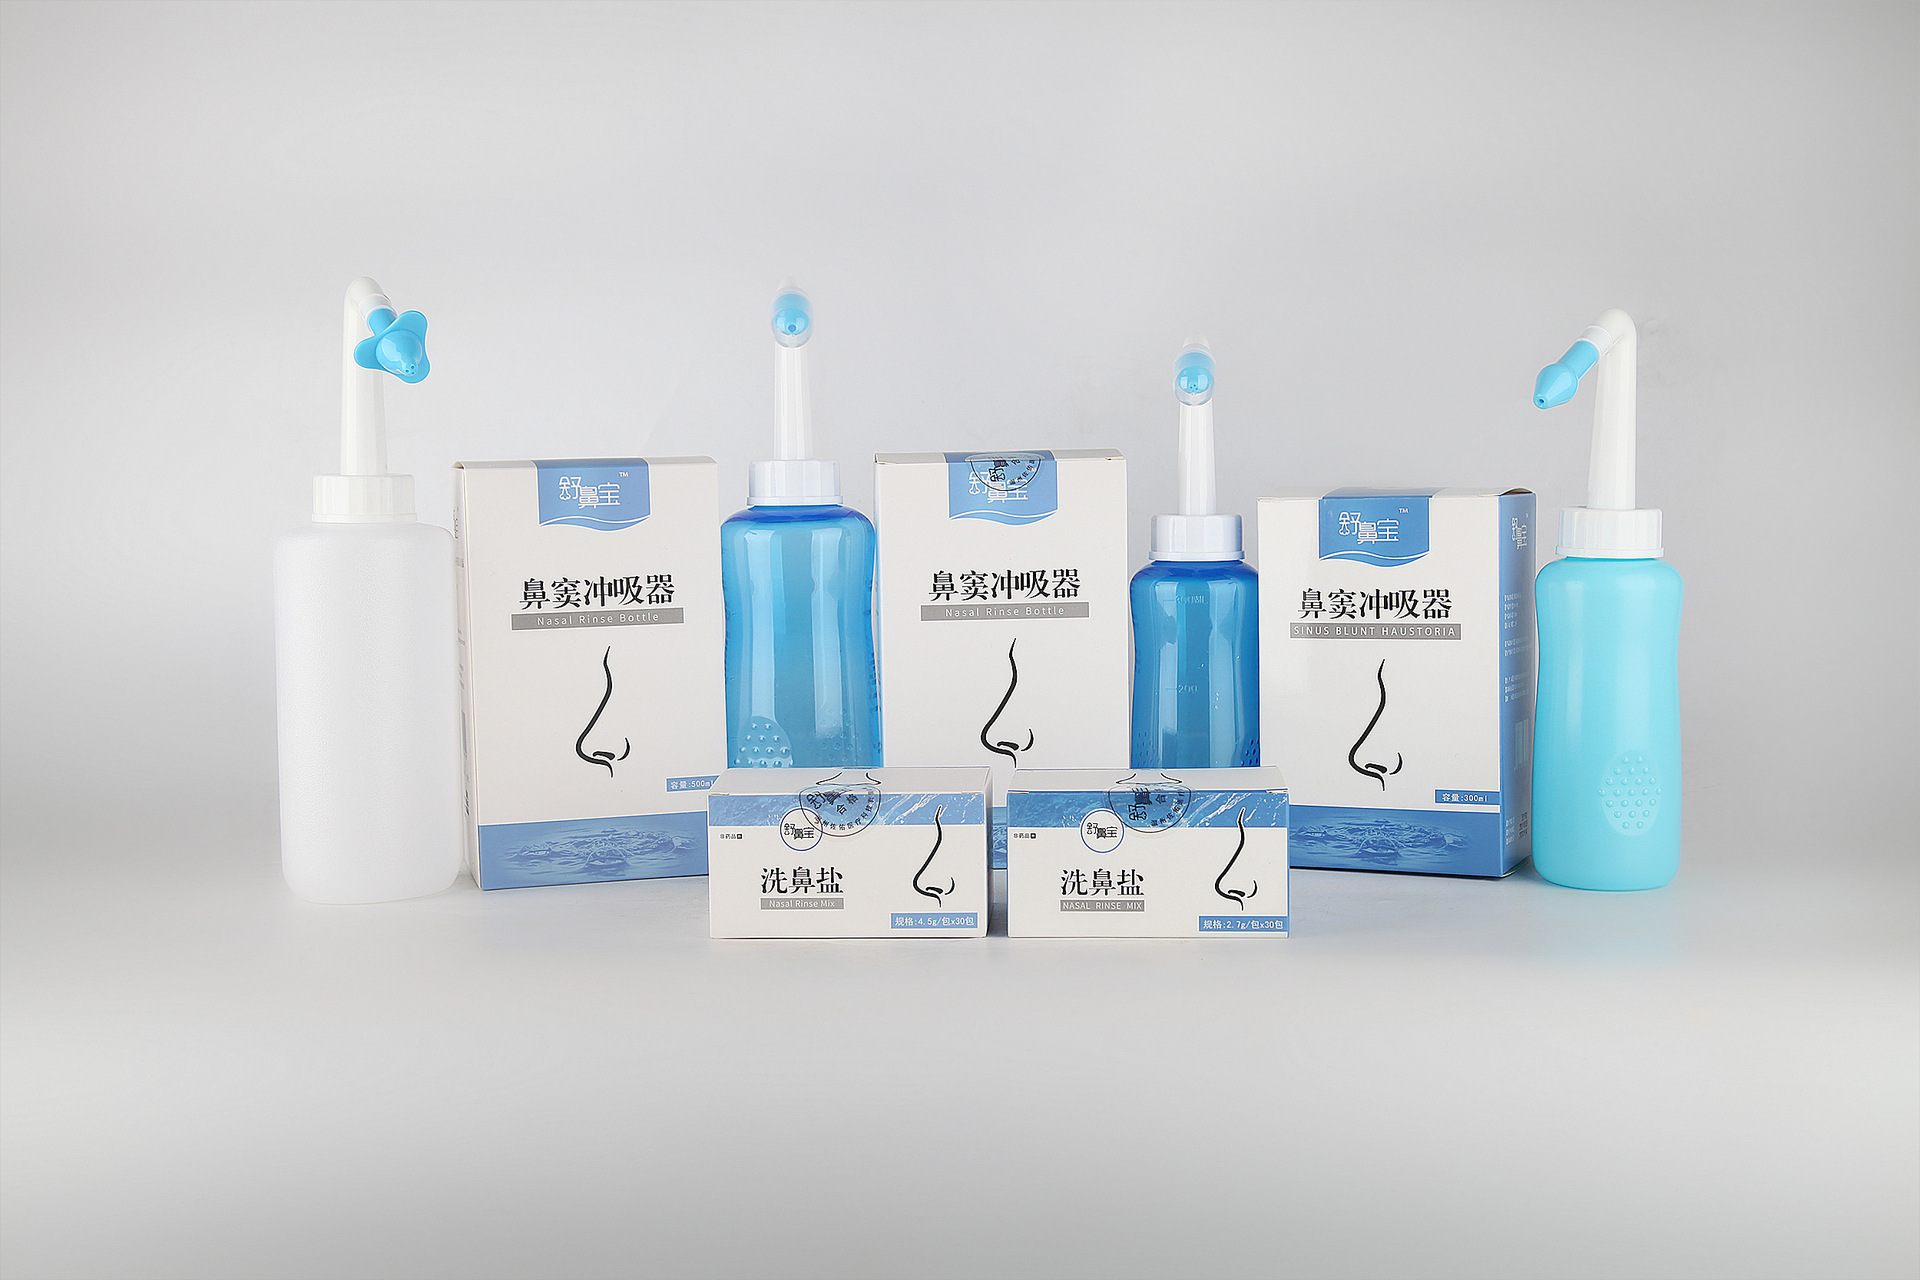 恩护士海水鼻腔清洗液——鼻腔健康新选择 - 企业 - 中国产业经济信息网